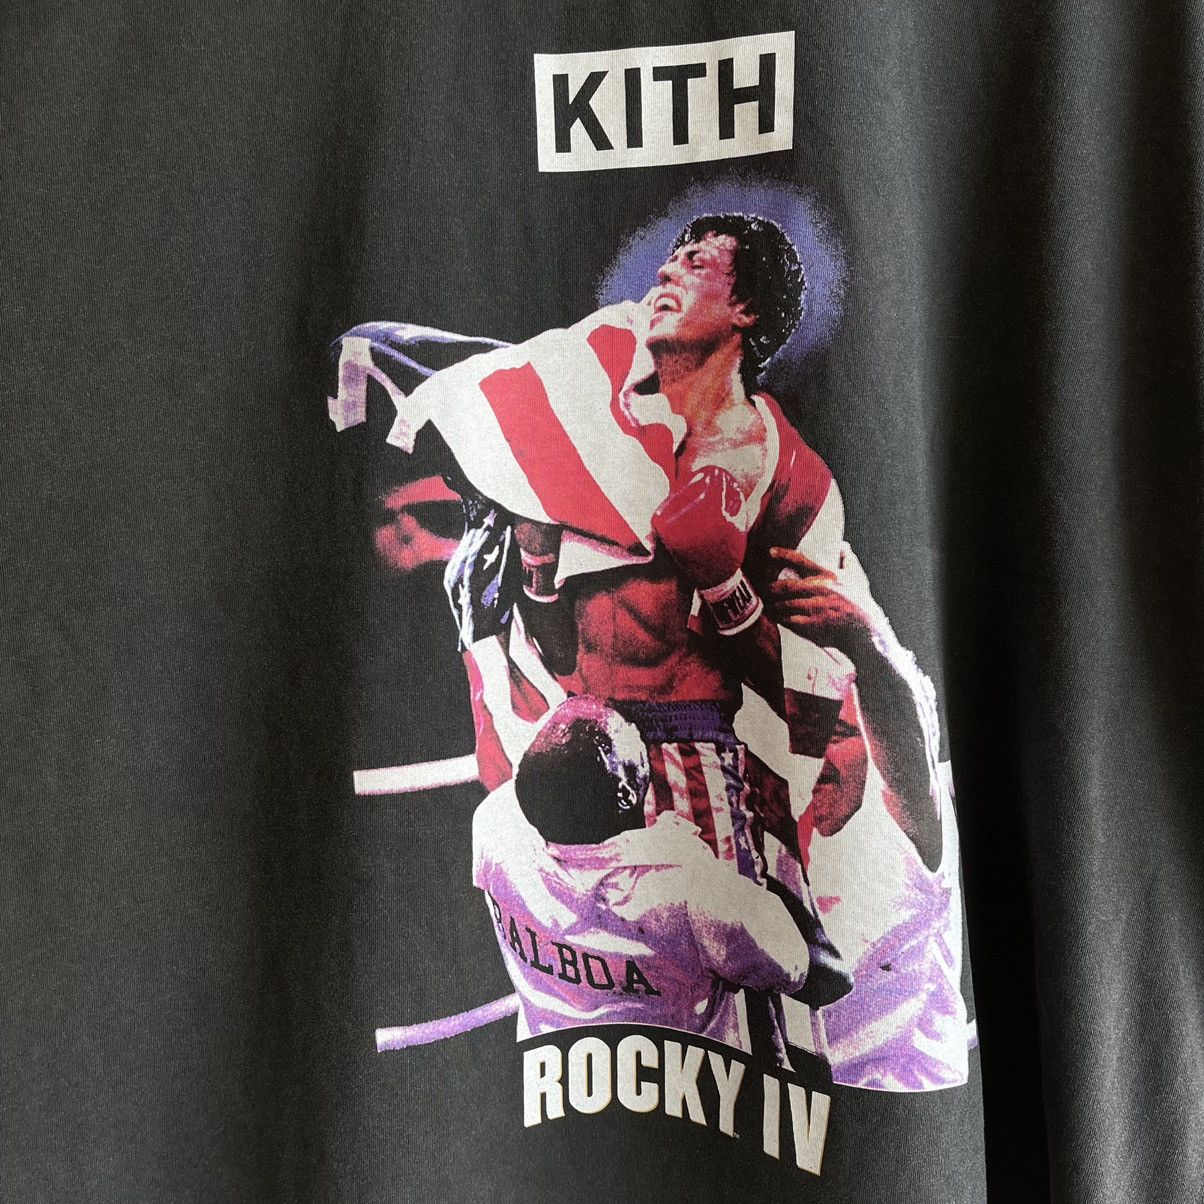 Kith KITH ROCKY IV VINTAGE TEE NEW | Grailed